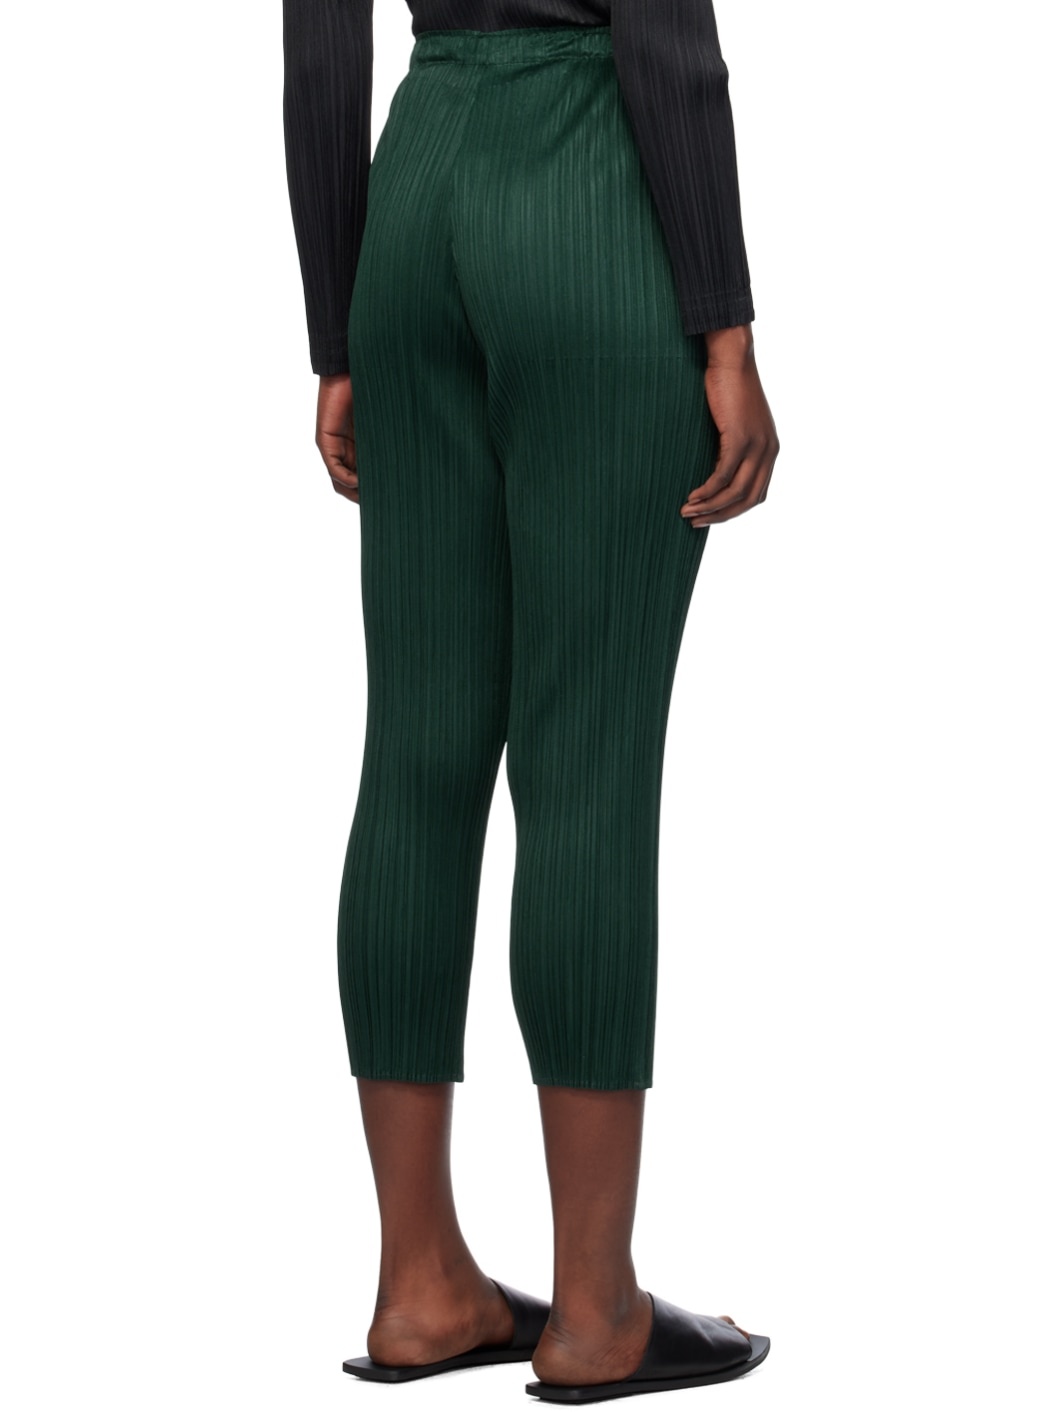 Green Basics Trousers - 3